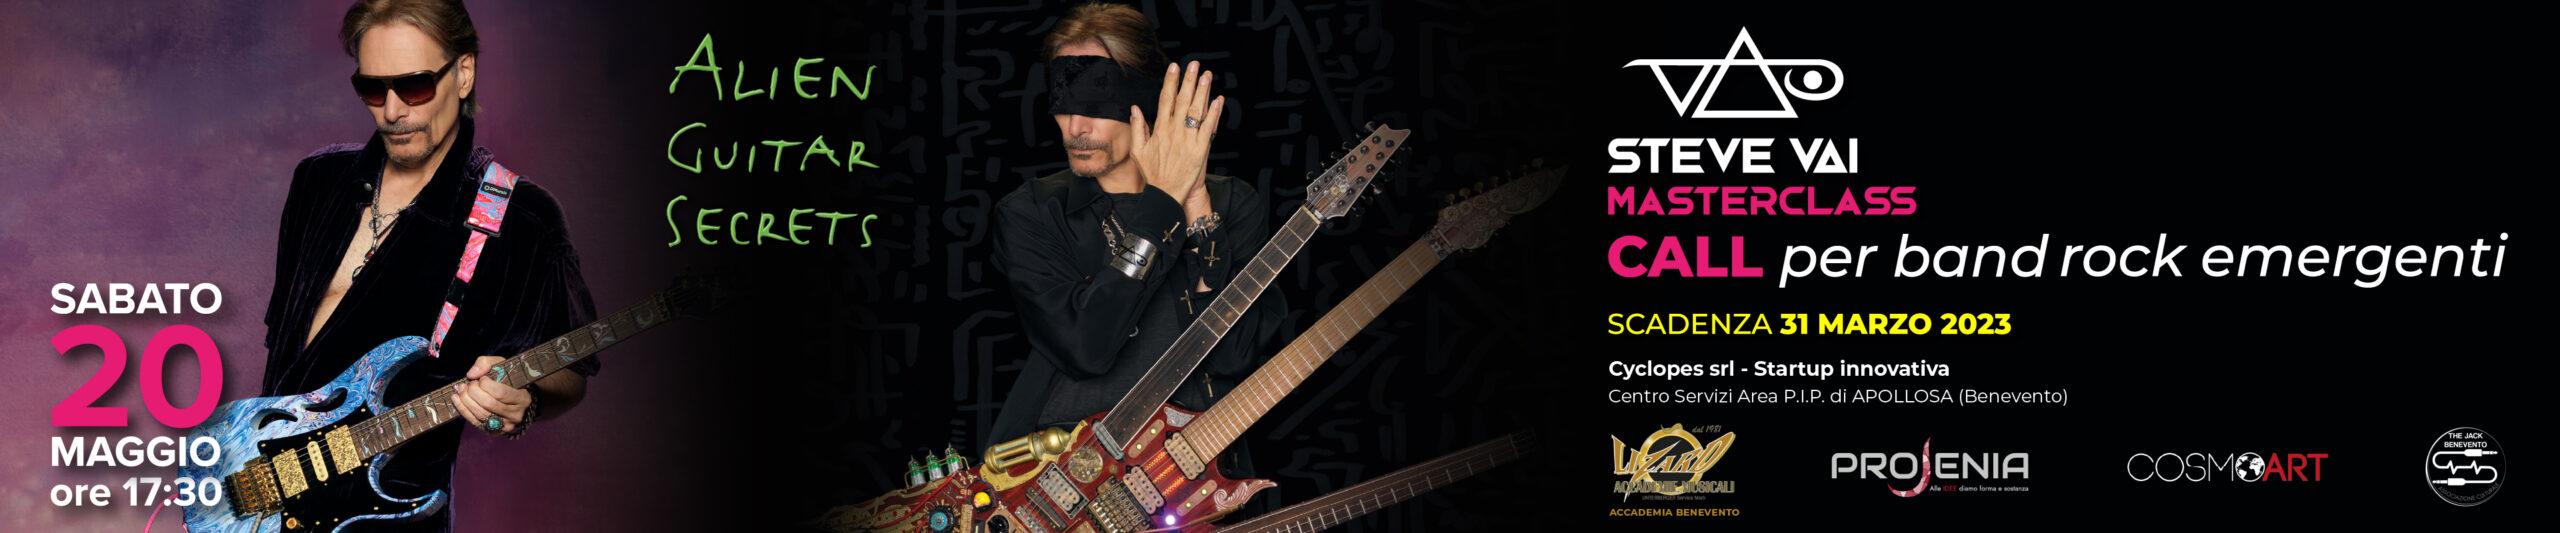 Steve Vai Alien Guitar Secrets Masterclass